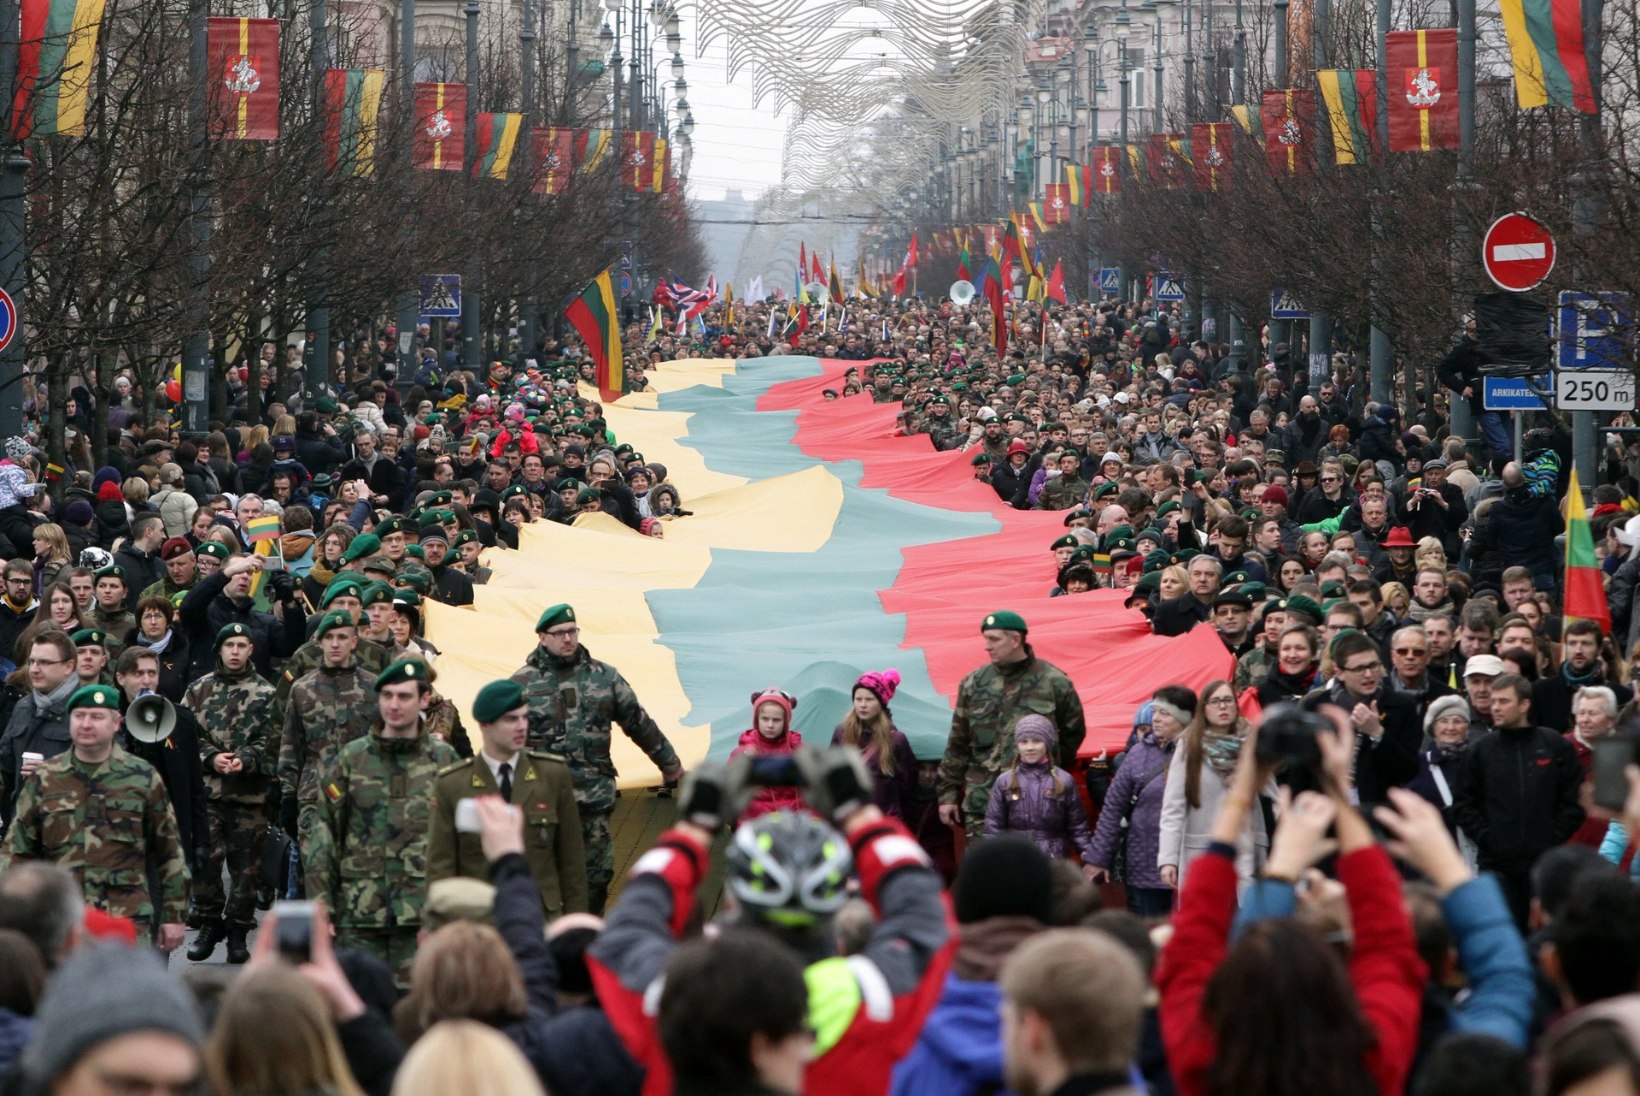 TEISTMOODI PÜHA: Leedu tähistab reedel vabariigi 100. aastapäeva suurte rahvapidustustega